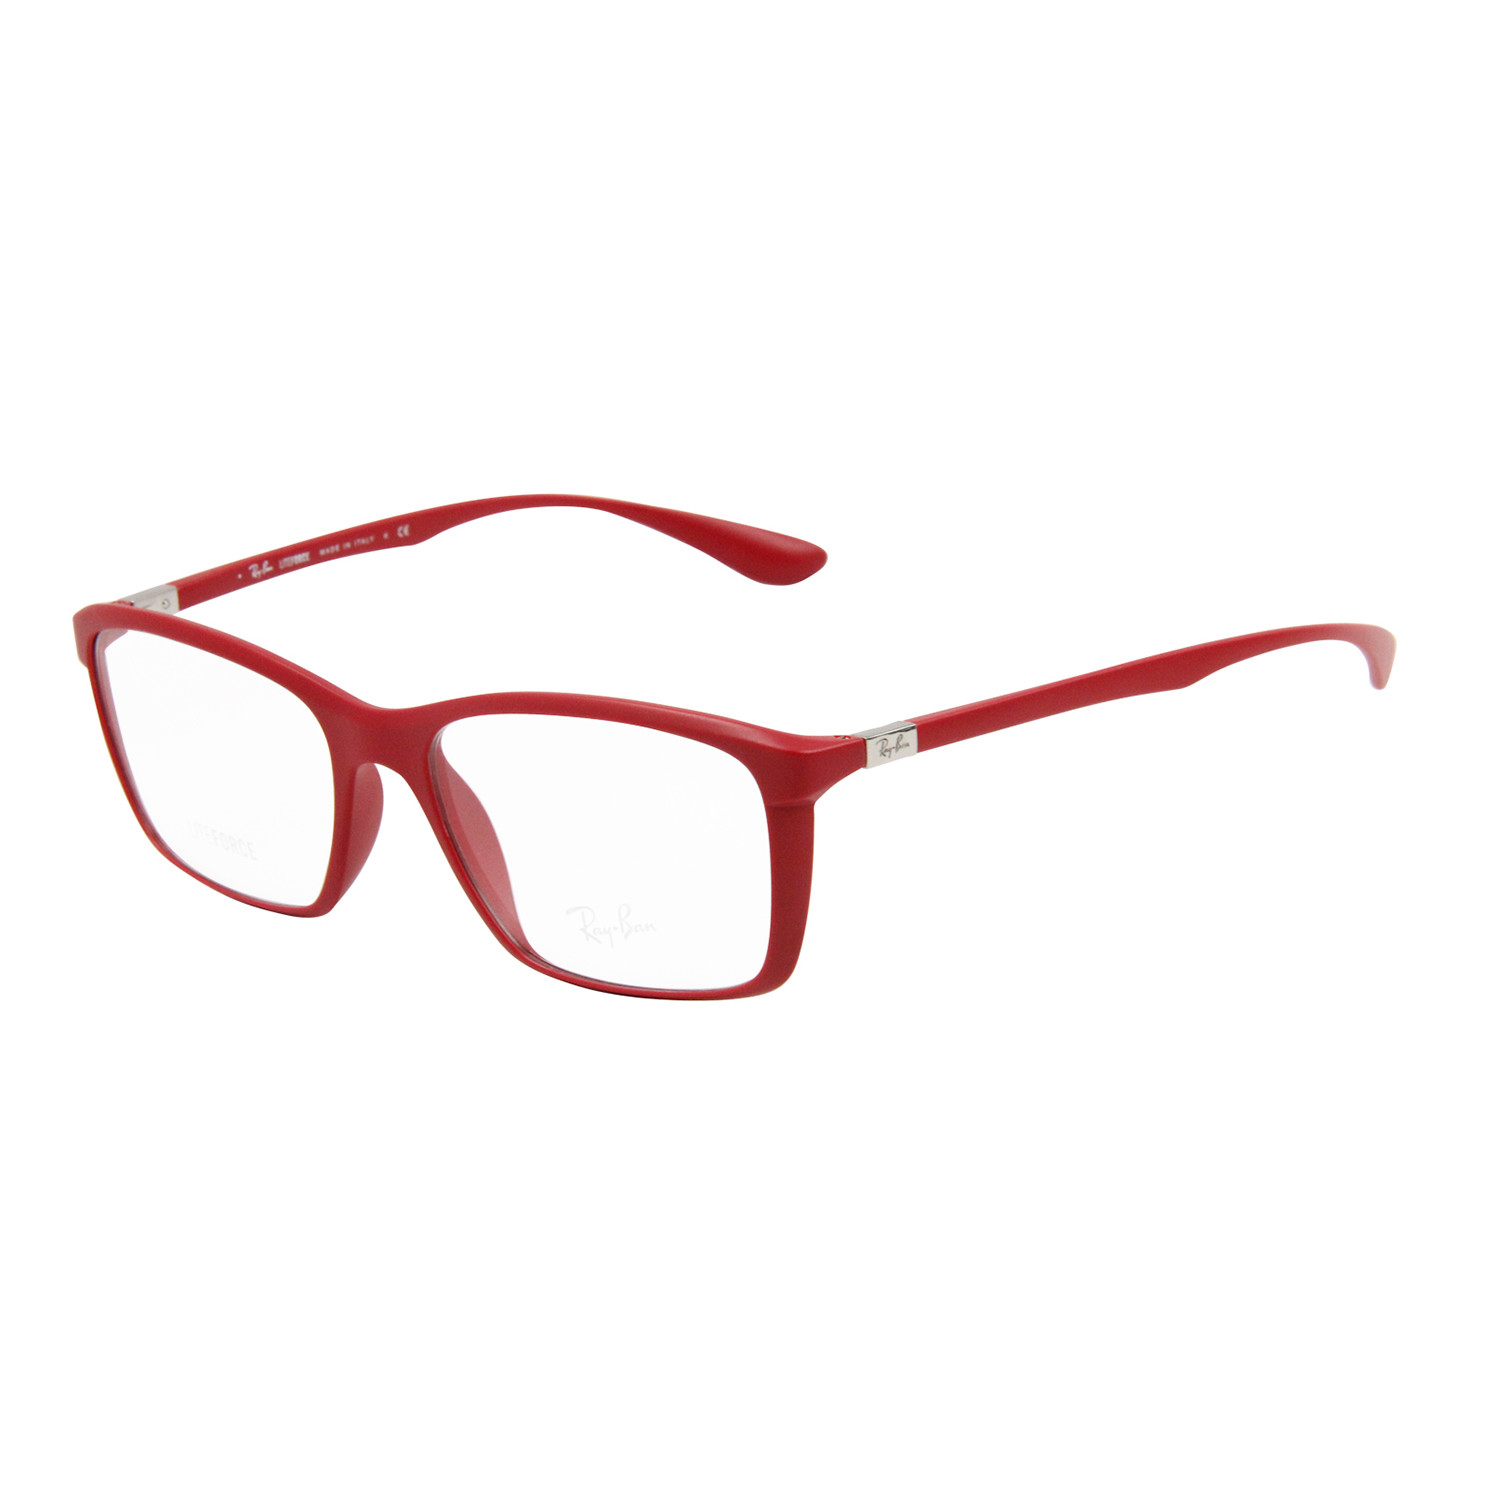 Rayban RX Glasses // RB7036 // 55mm Red Frame - Designer Glasses ...